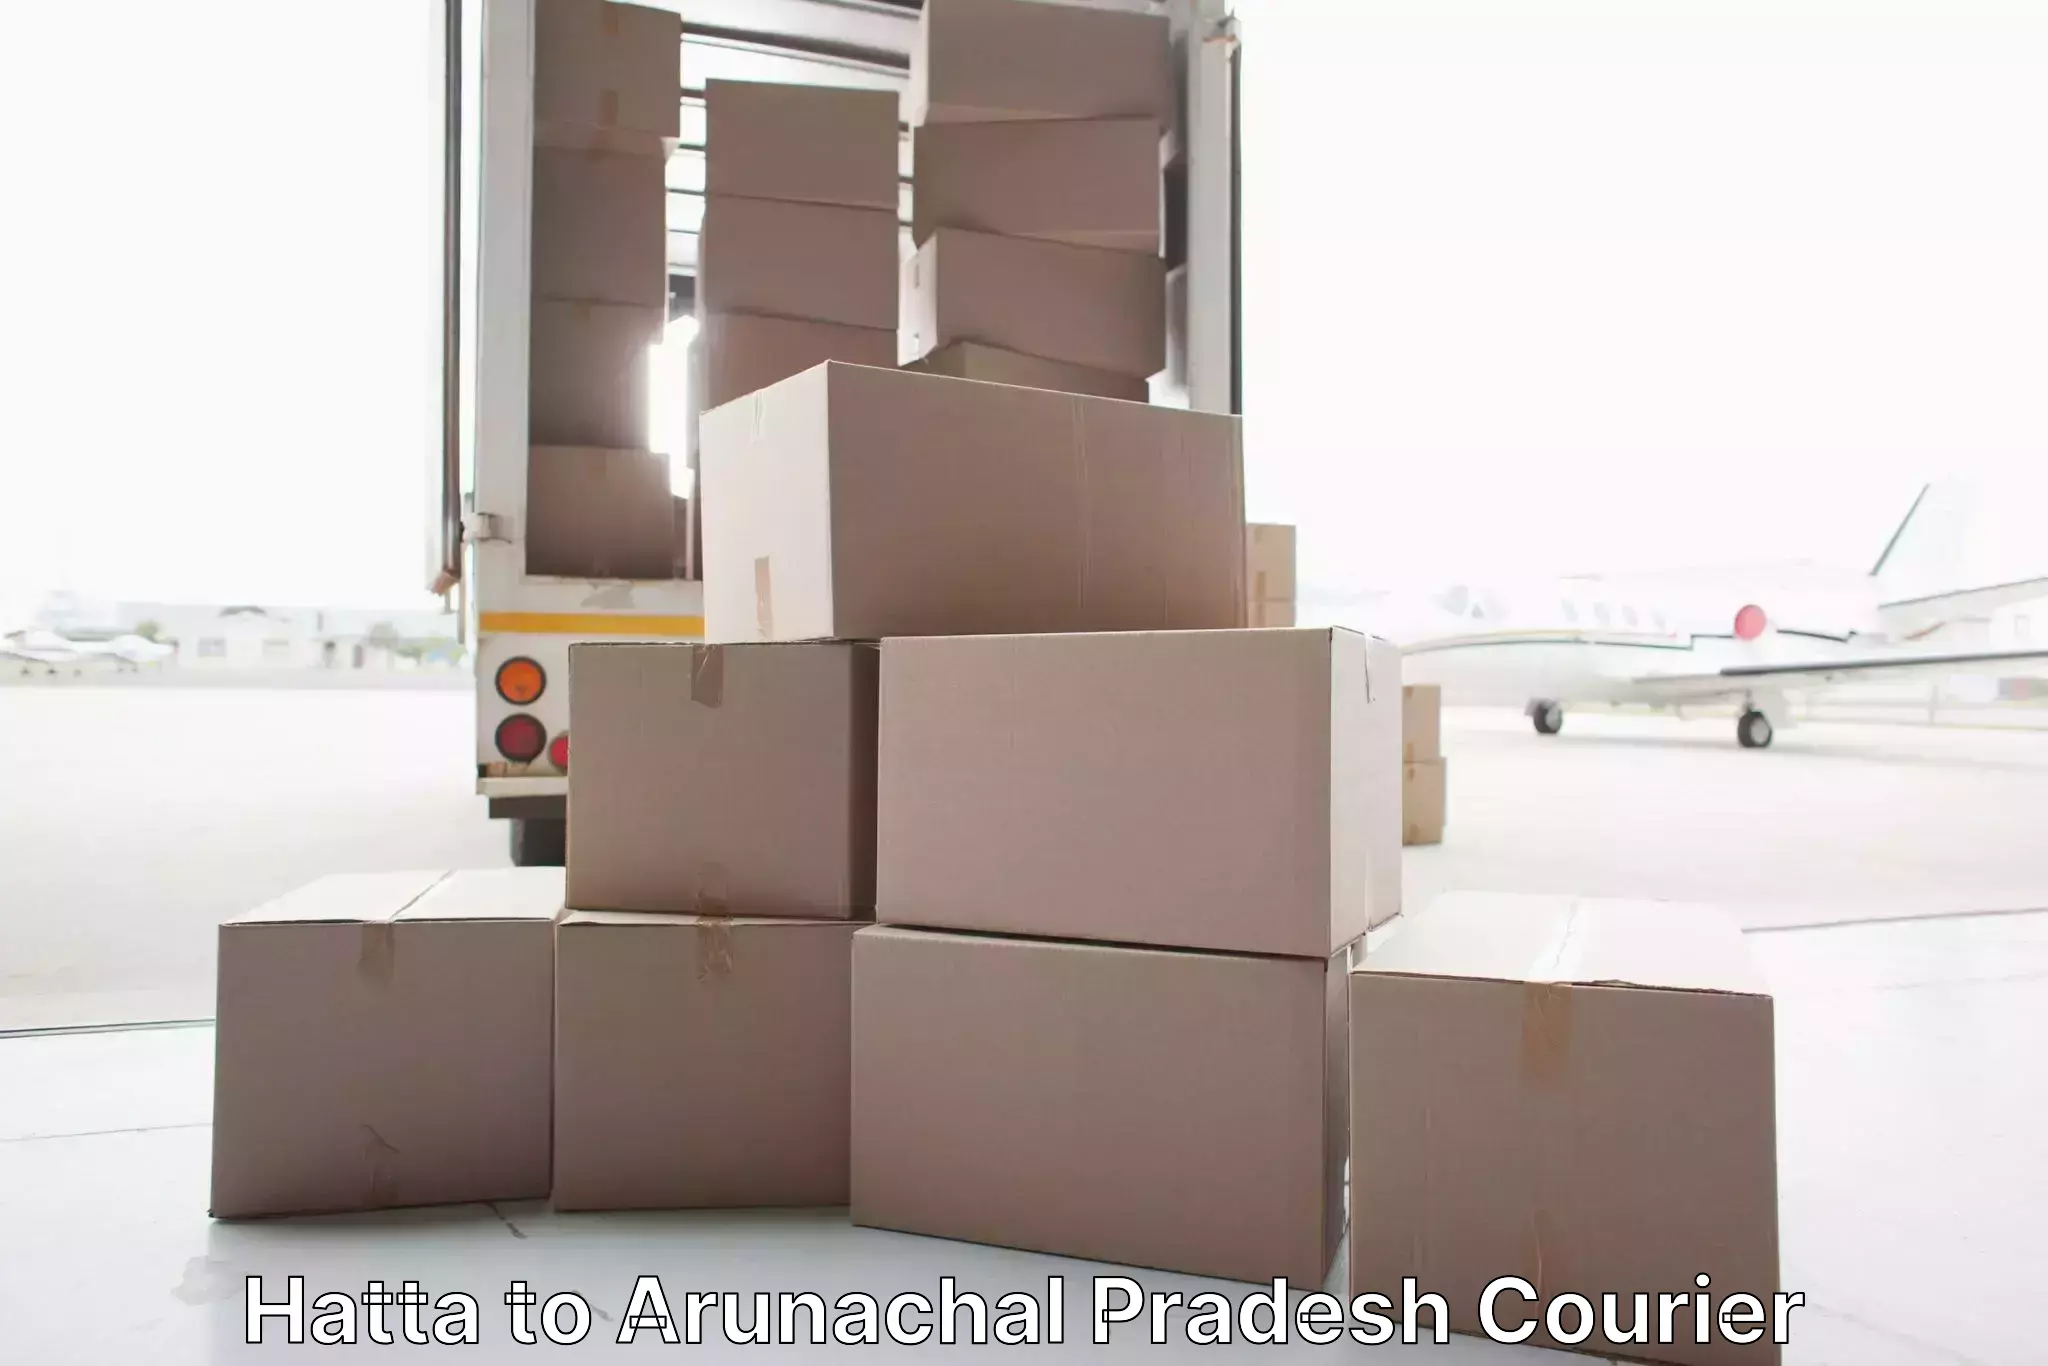 Furniture transport specialists Hatta to Arunachal Pradesh